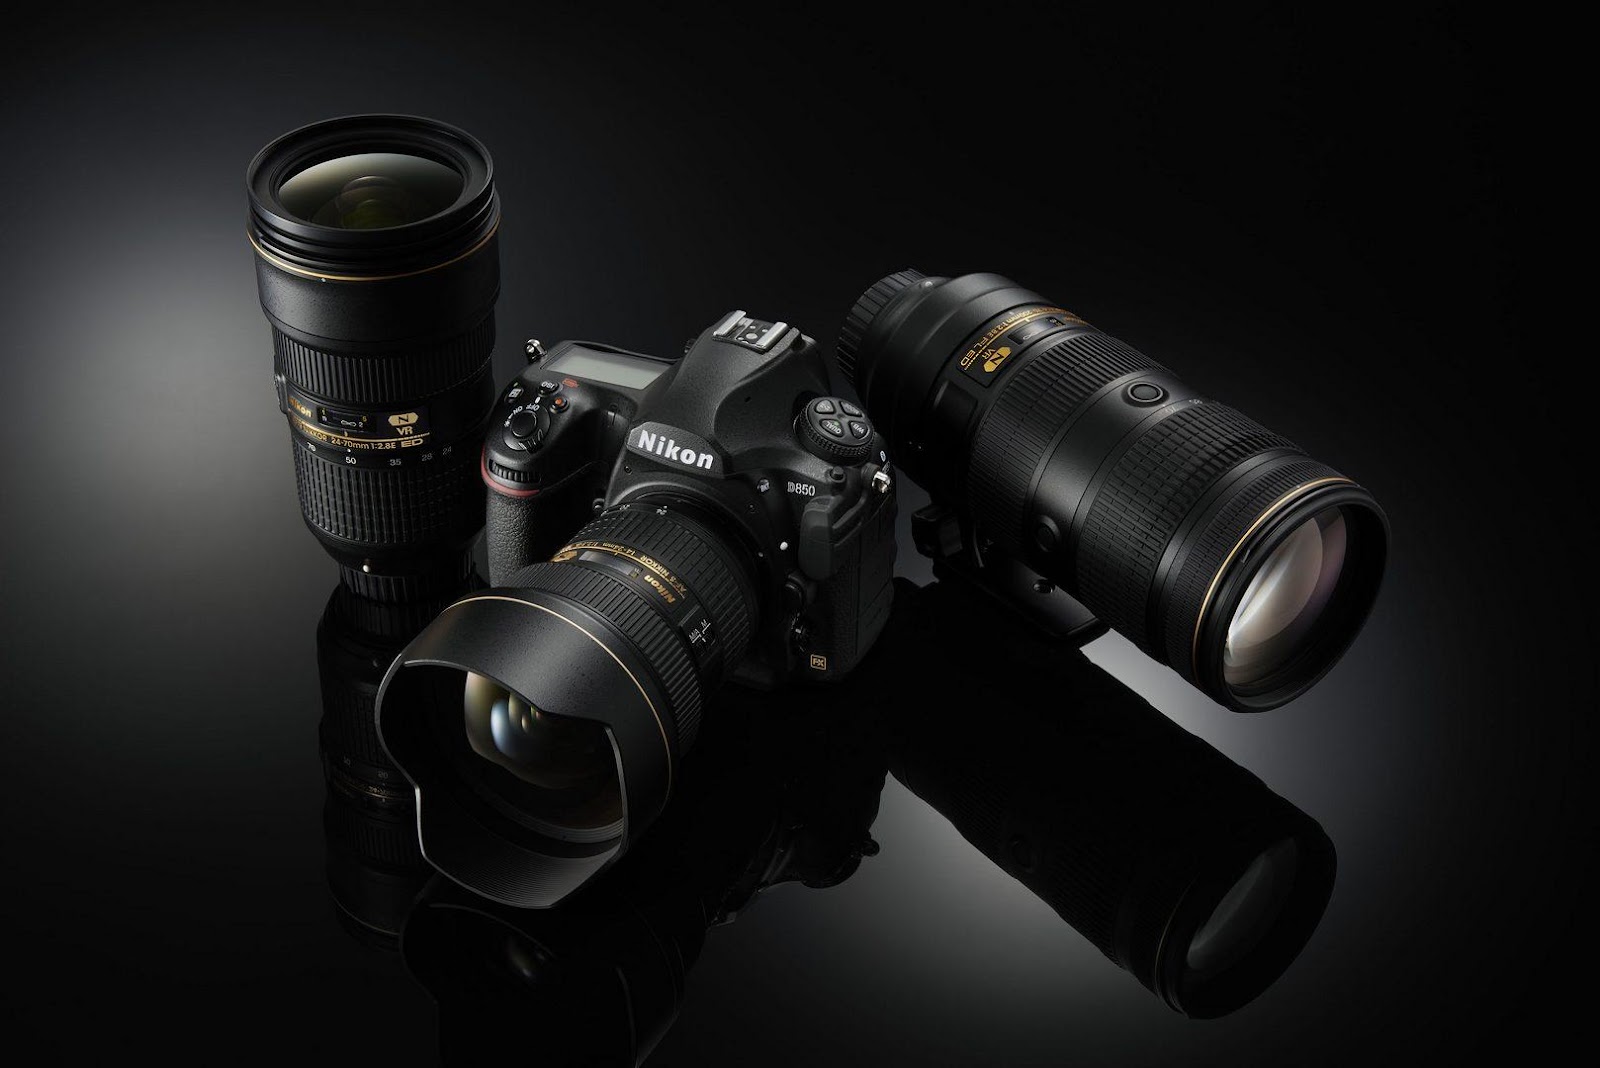 เปิดตัว Nikon D850 กล้อง Full Frame เจาะกลุ่มผู้ใช้มืออาชีพ - #beartai